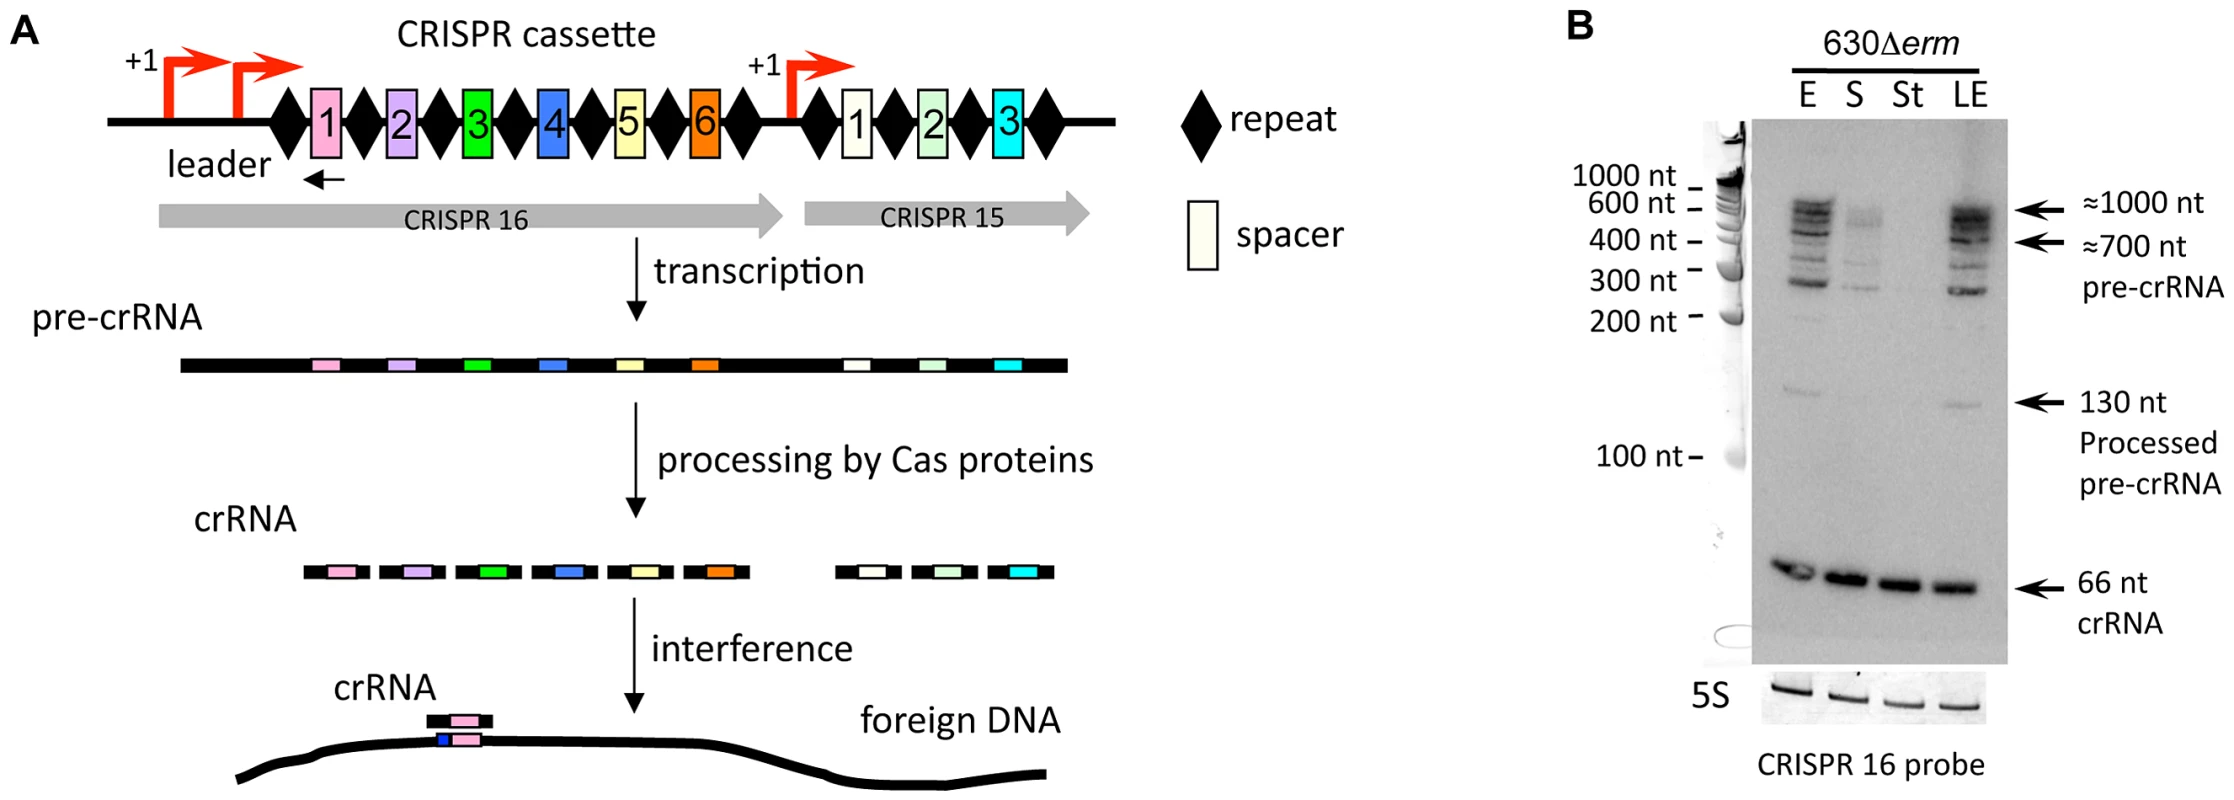 Expression of CRISPR 16 cassette.